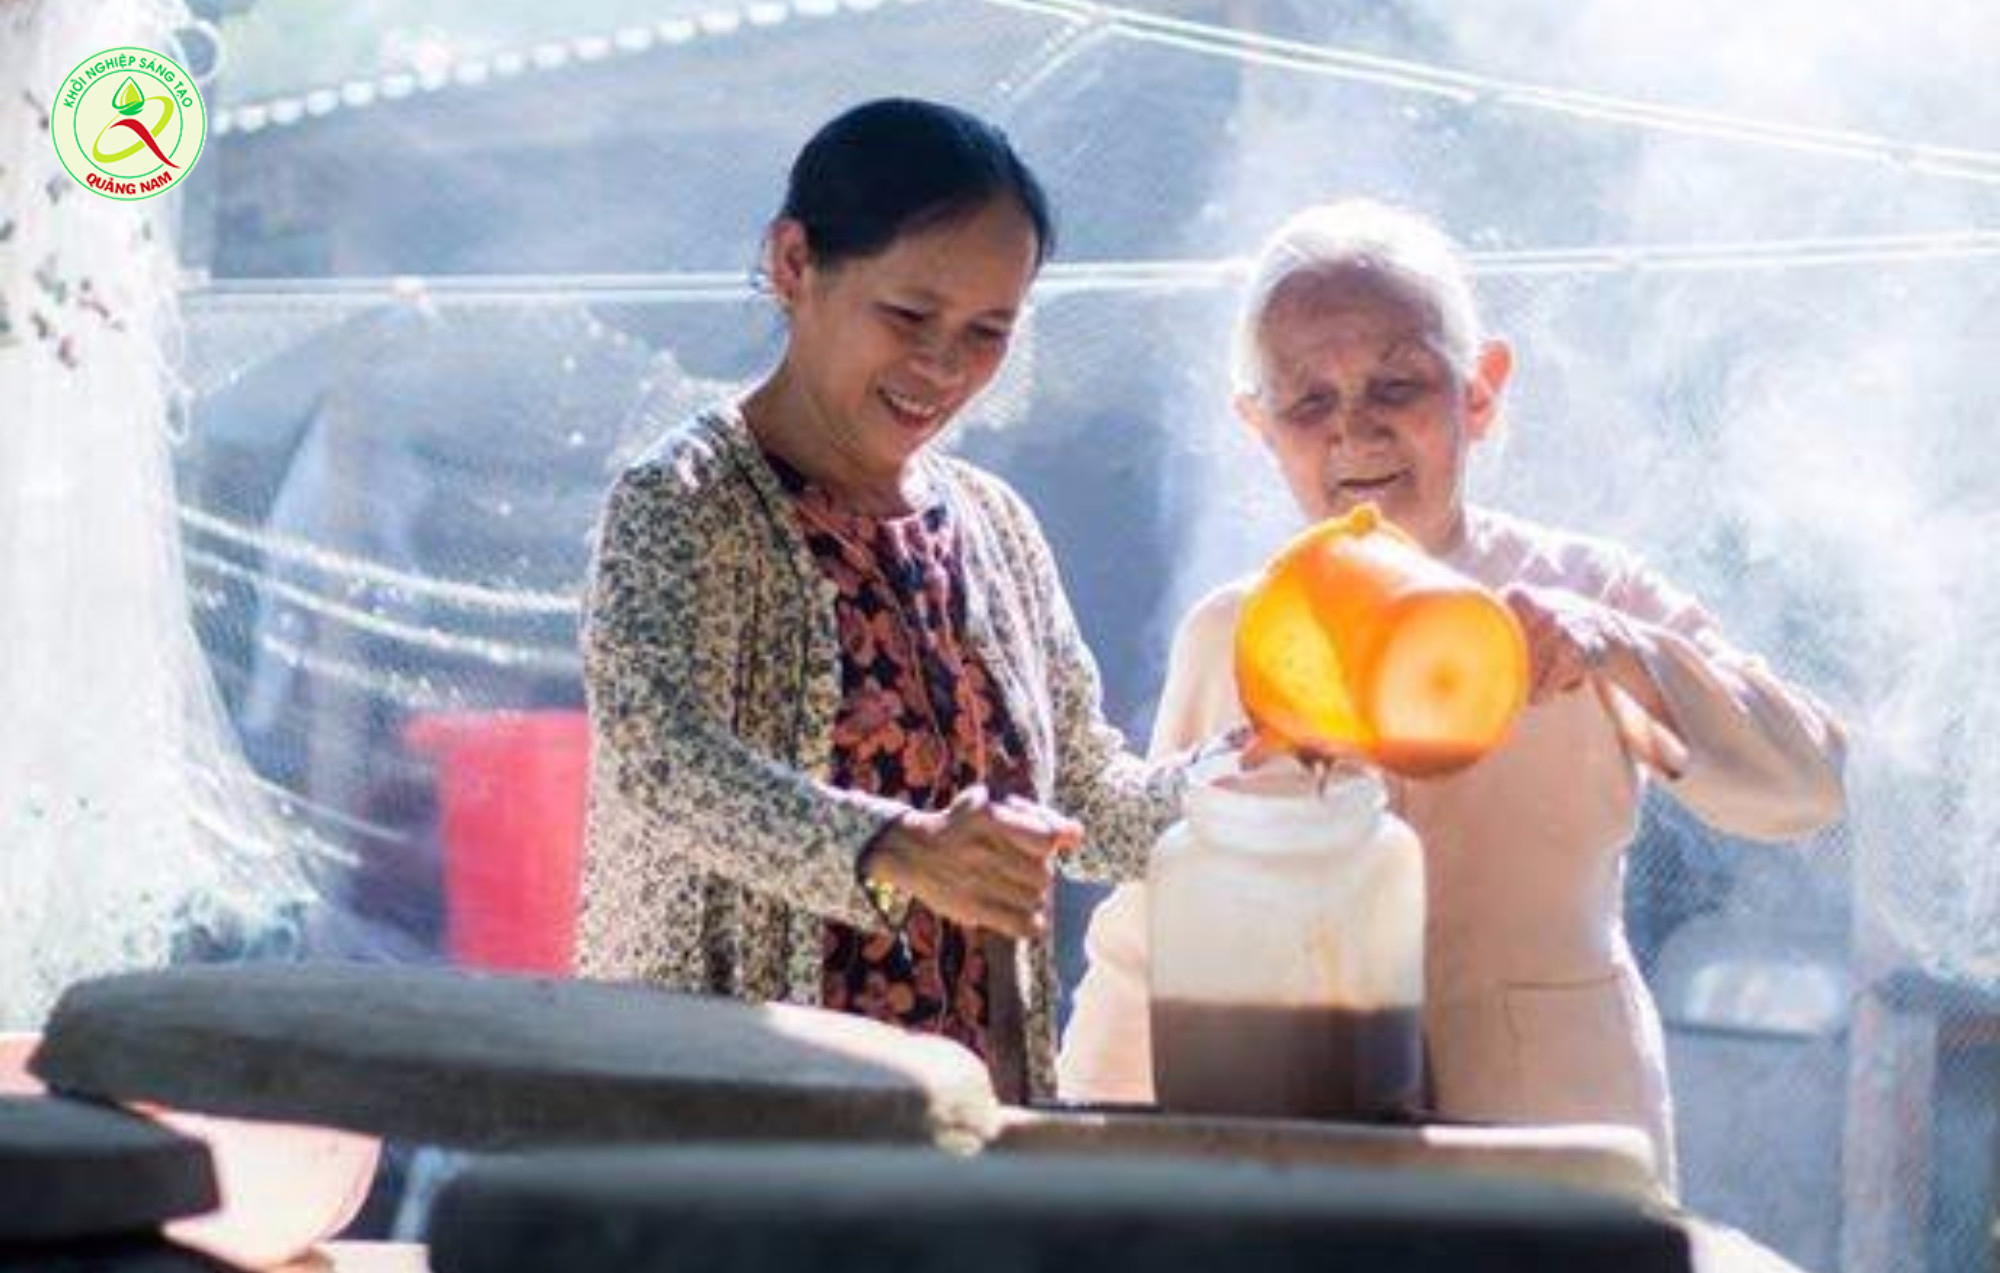 Nước mắm truyền thống Tam Thanh được gìn giữ với phương thức sản xuất truyền thống